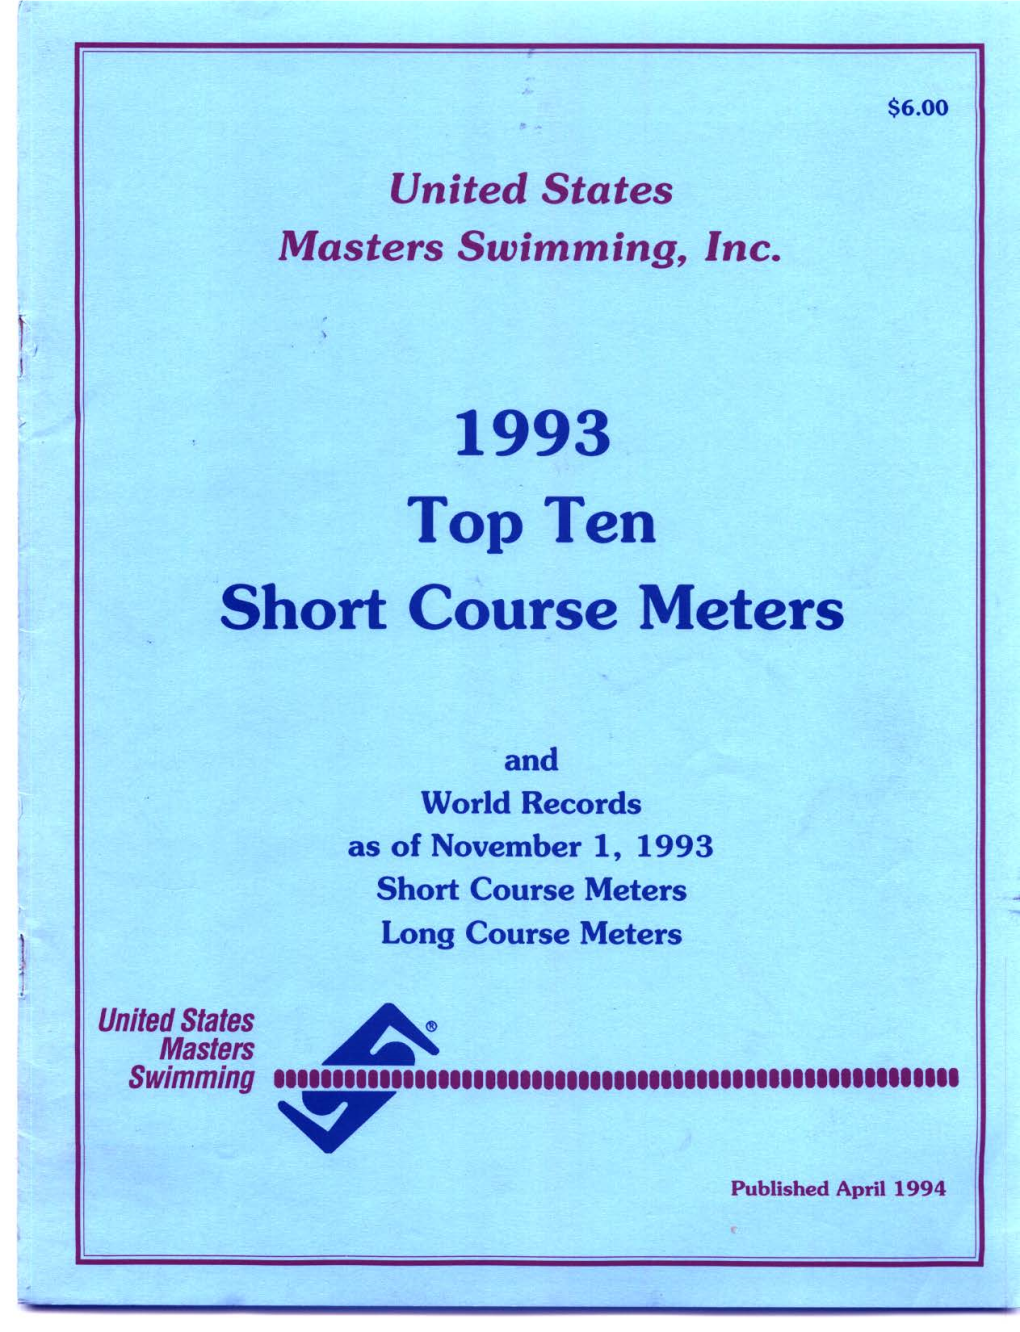 1993 Top Ten Short Course Meters